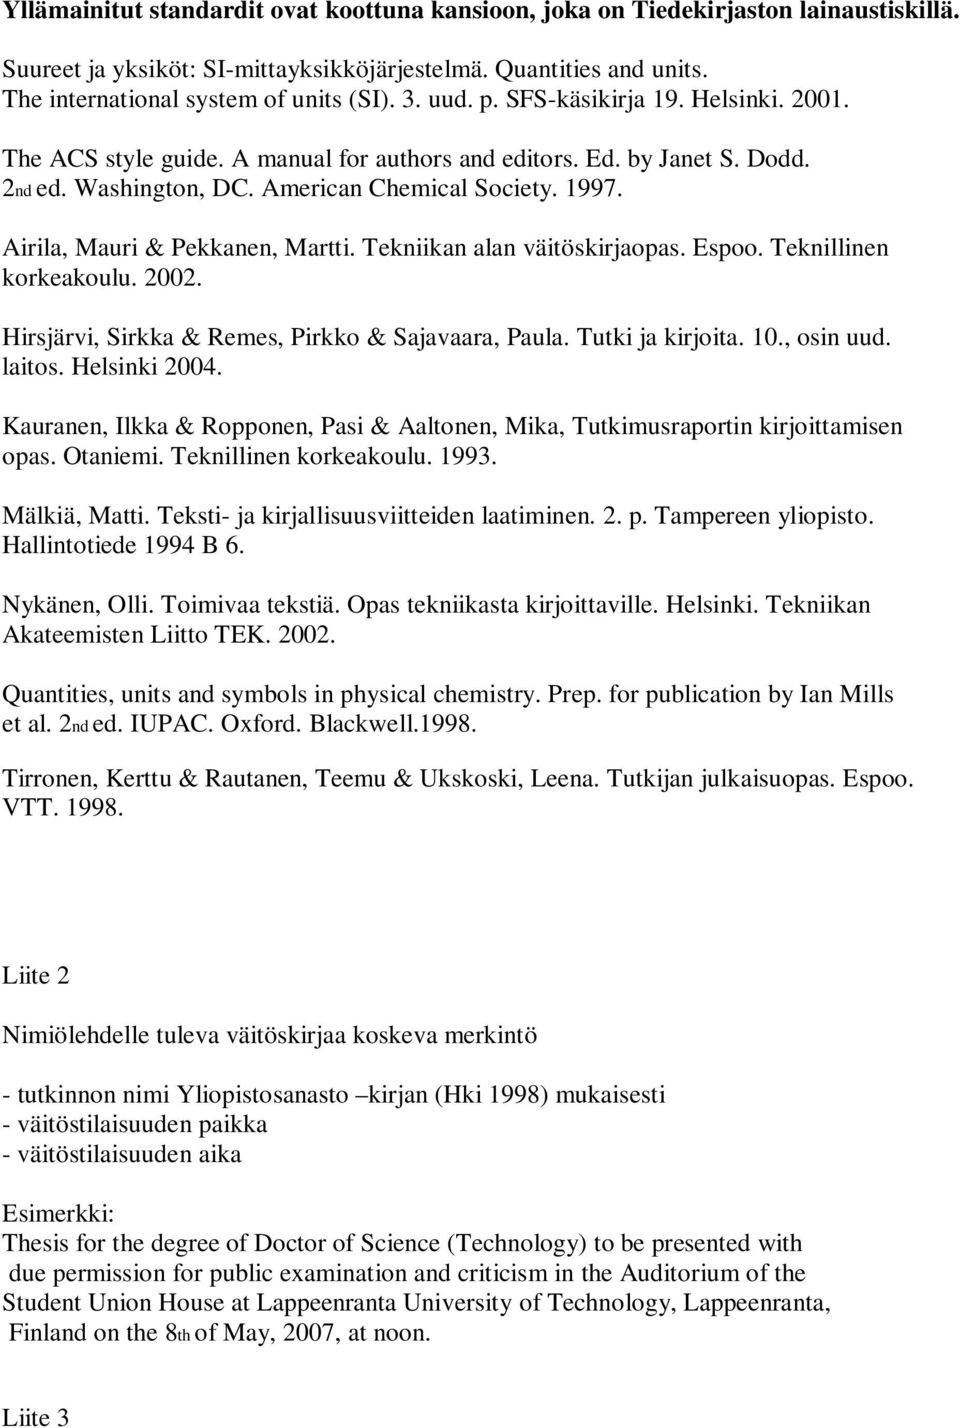 Airila, Mauri & Pekkanen, Martti. Tekniikan alan väitöskirjaopas. Espoo. Teknillinen korkeakoulu. 2002. Hirsjärvi, Sirkka & Remes, Pirkko & Sajavaara, Paula. Tutki ja kirjoita. 10., osin uud. laitos.